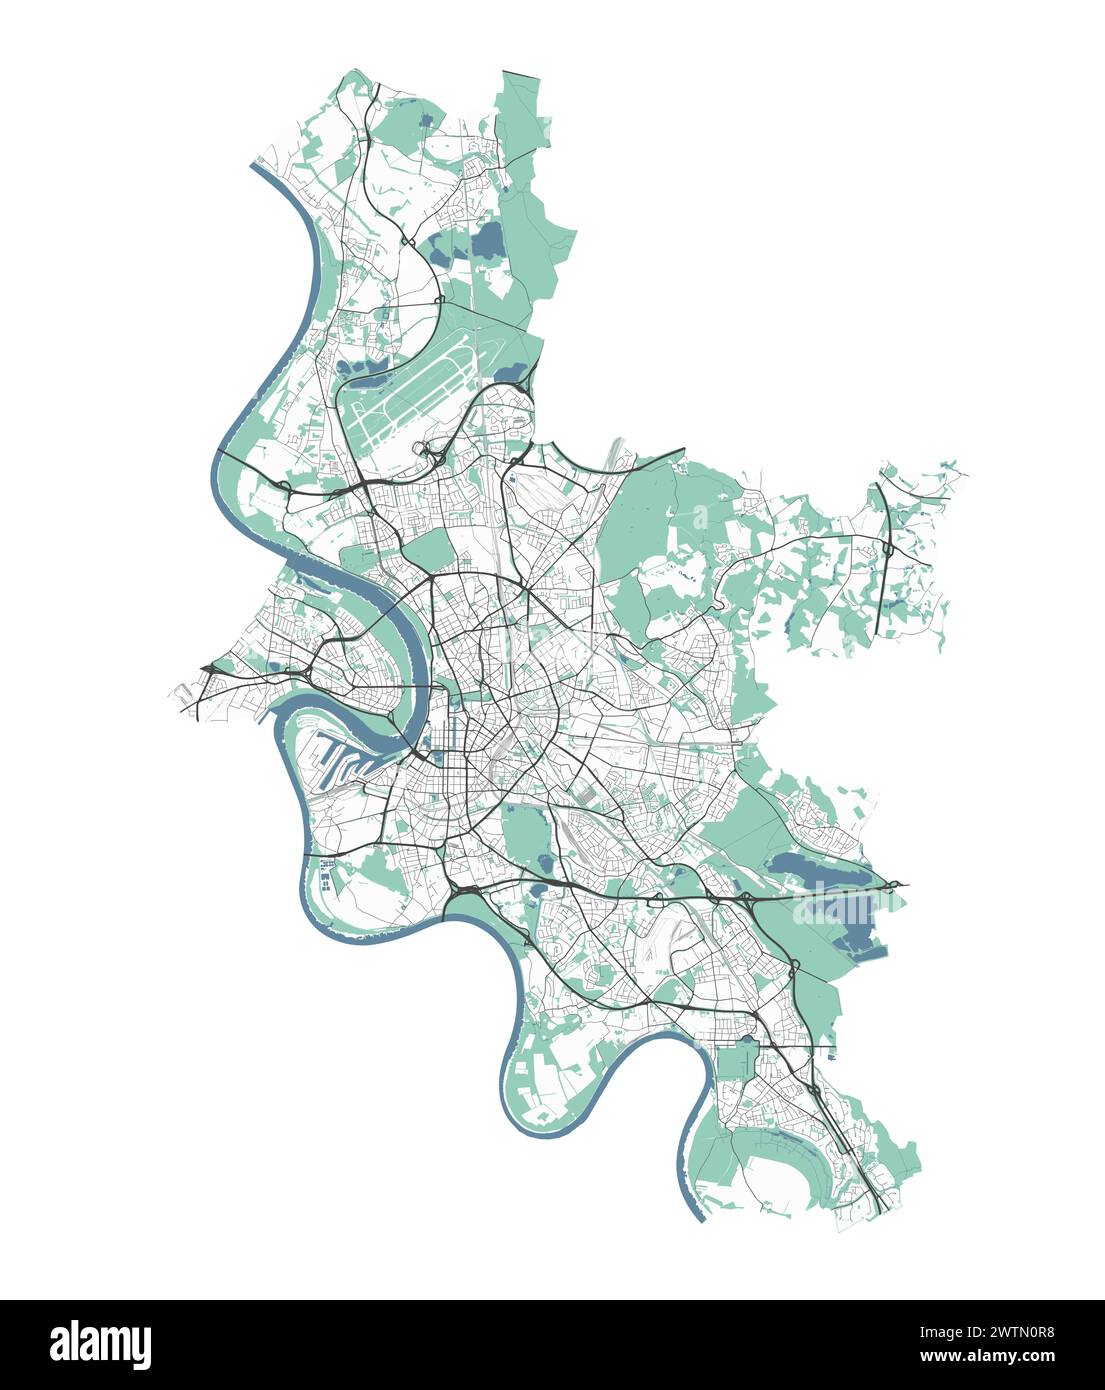 Karte von Düsseldorf, Deutschland. Detaillierte Stadtvektorkarte, Metropolregion mit Grenze. Straßenkarte mit Straßen und Wasser. Stock Vektor